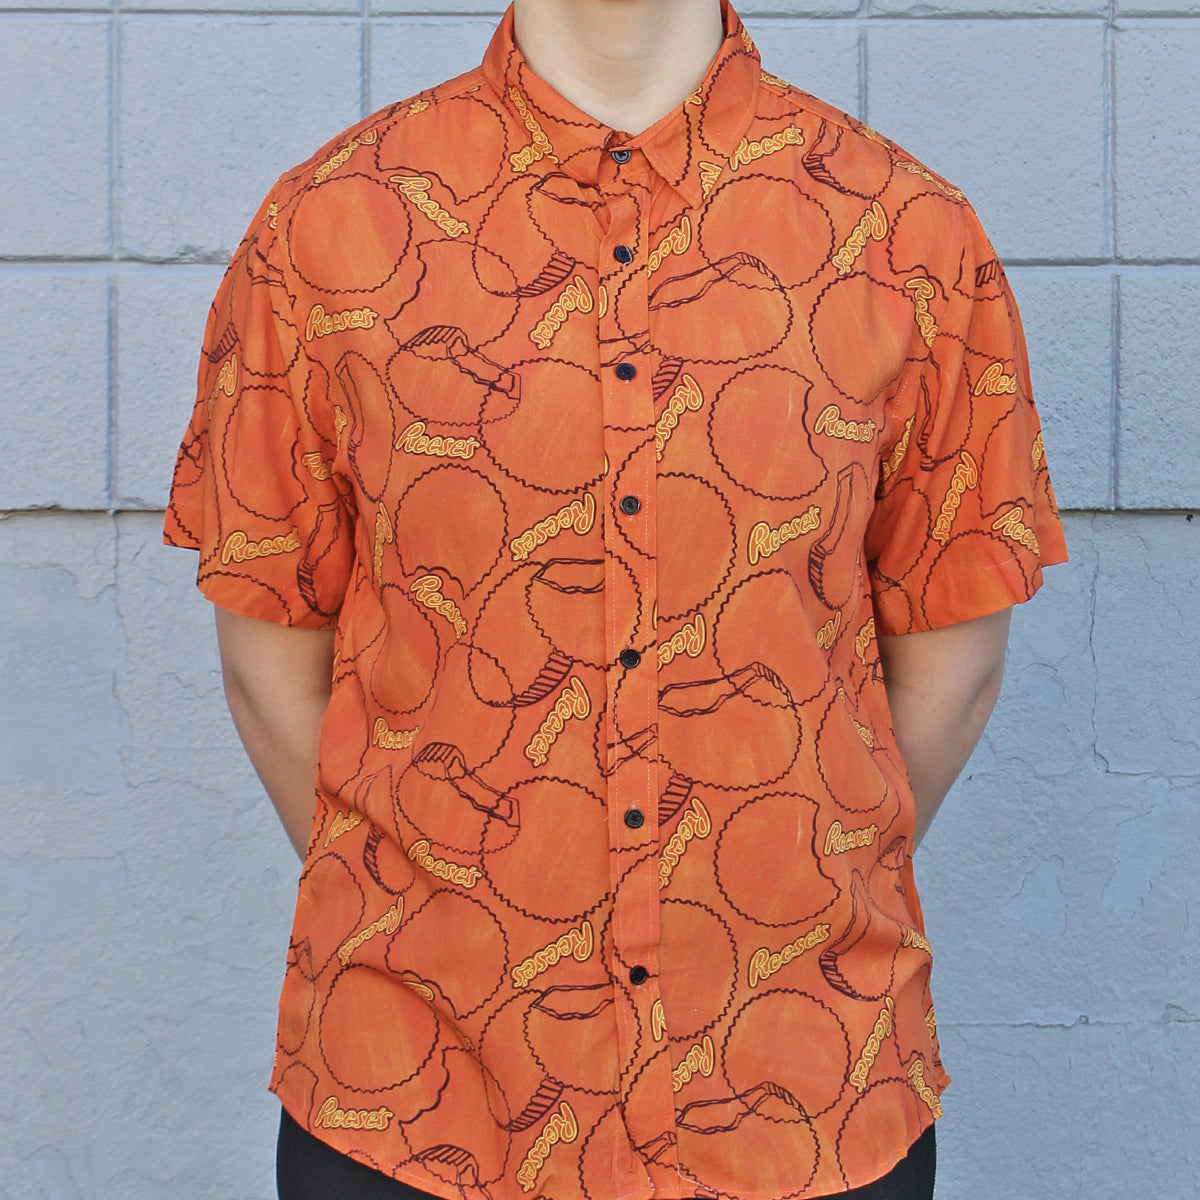 REESE'S PEANUT BUTTER CUP Silhouette Pattern (Orange) / Hawaiian